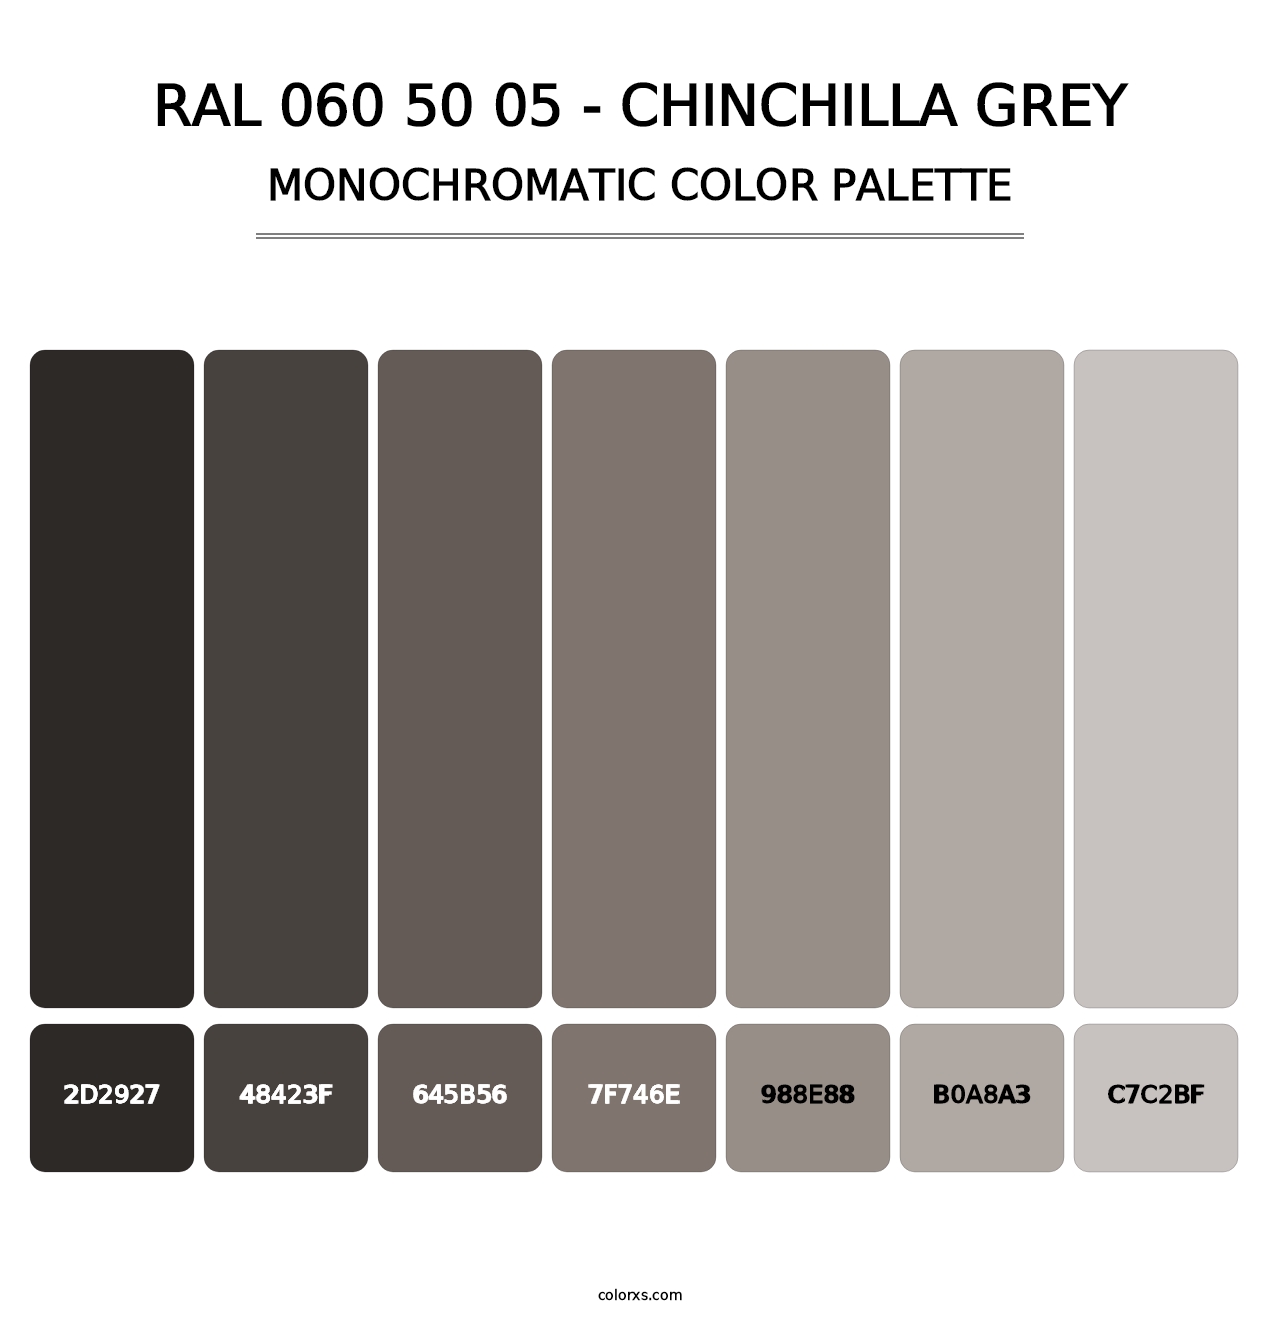 RAL 060 50 05 - Chinchilla Grey - Monochromatic Color Palette